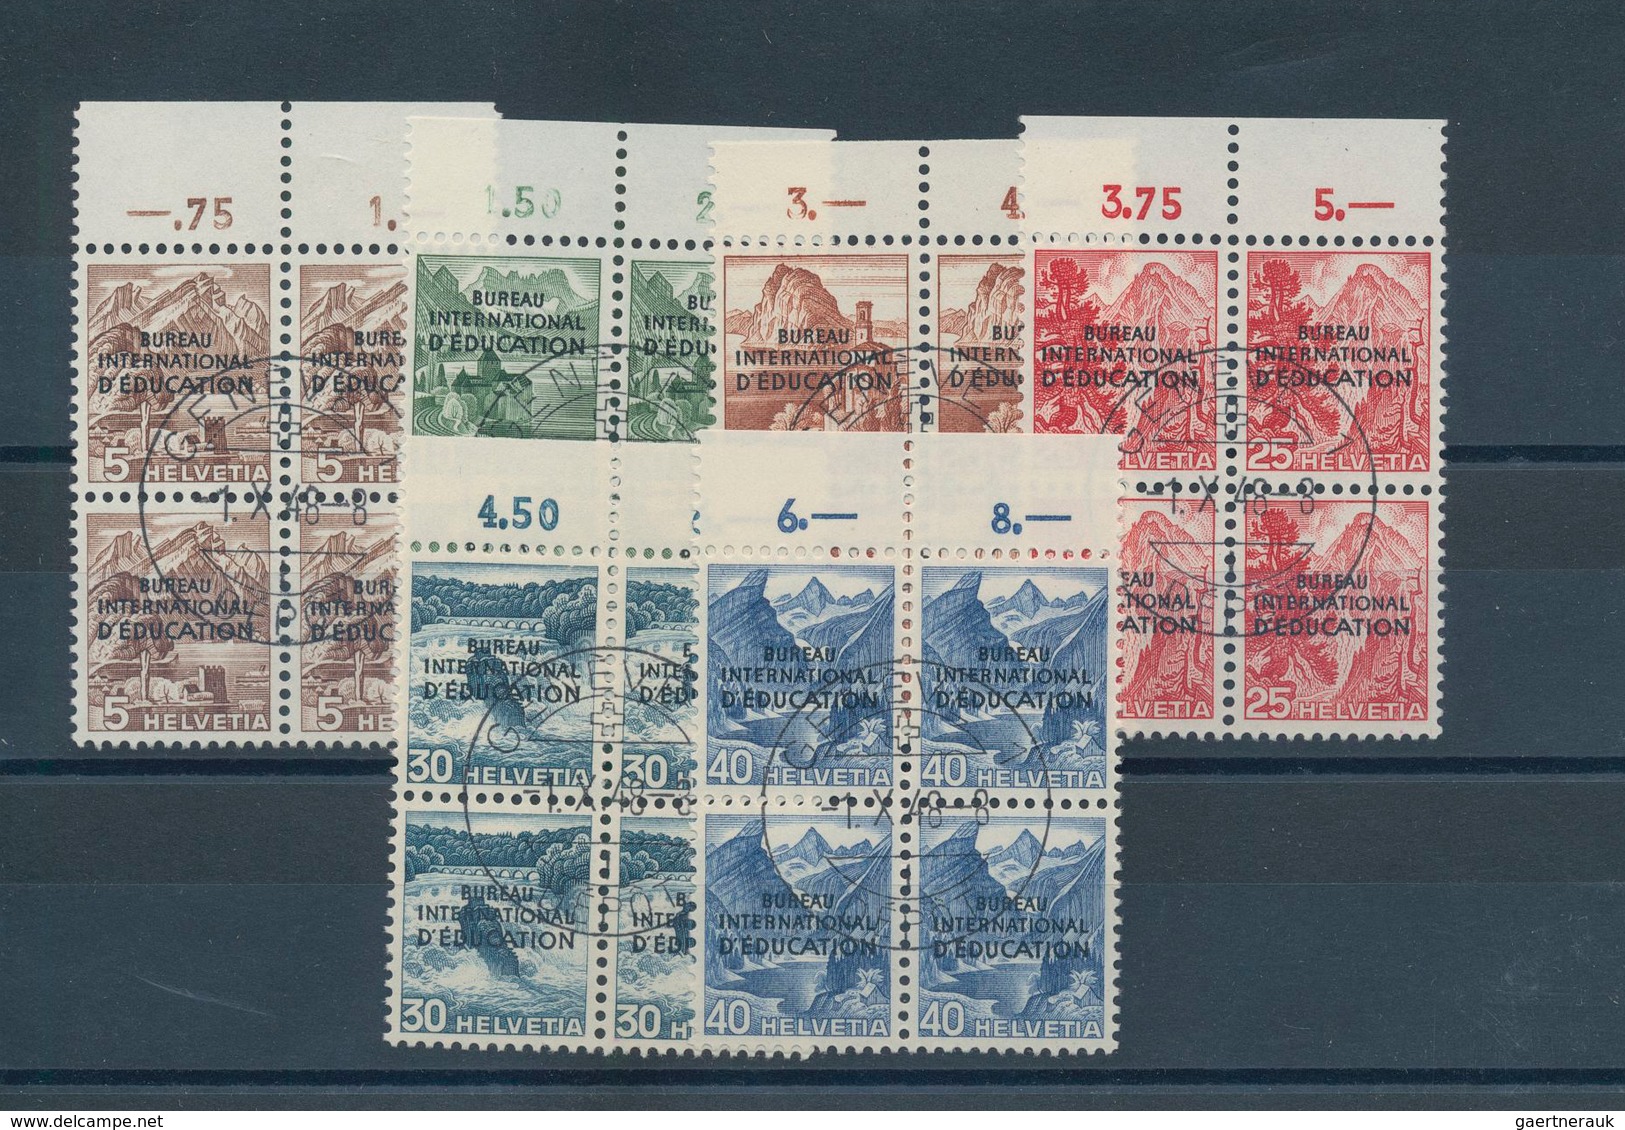 Schweiz - Internationale Organisationen: 1922/1944, saubere Steckkartenpartie mit meist Ausgaben SDN